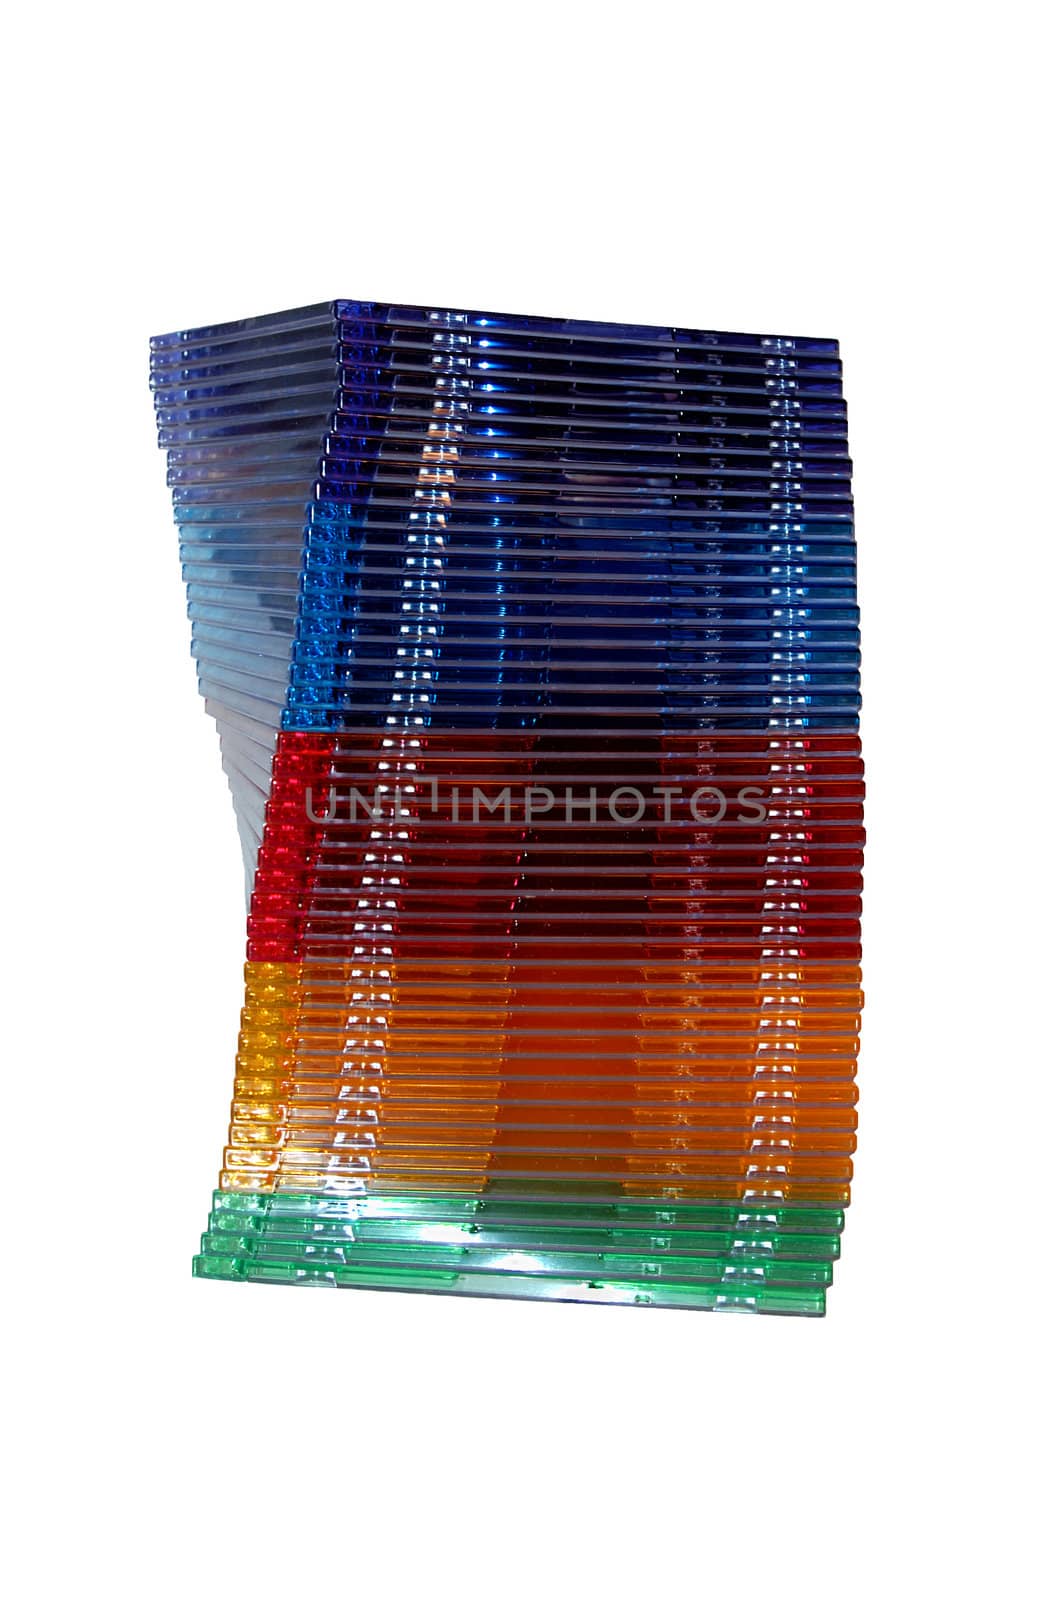 dvd cd jewel cases by zenpix